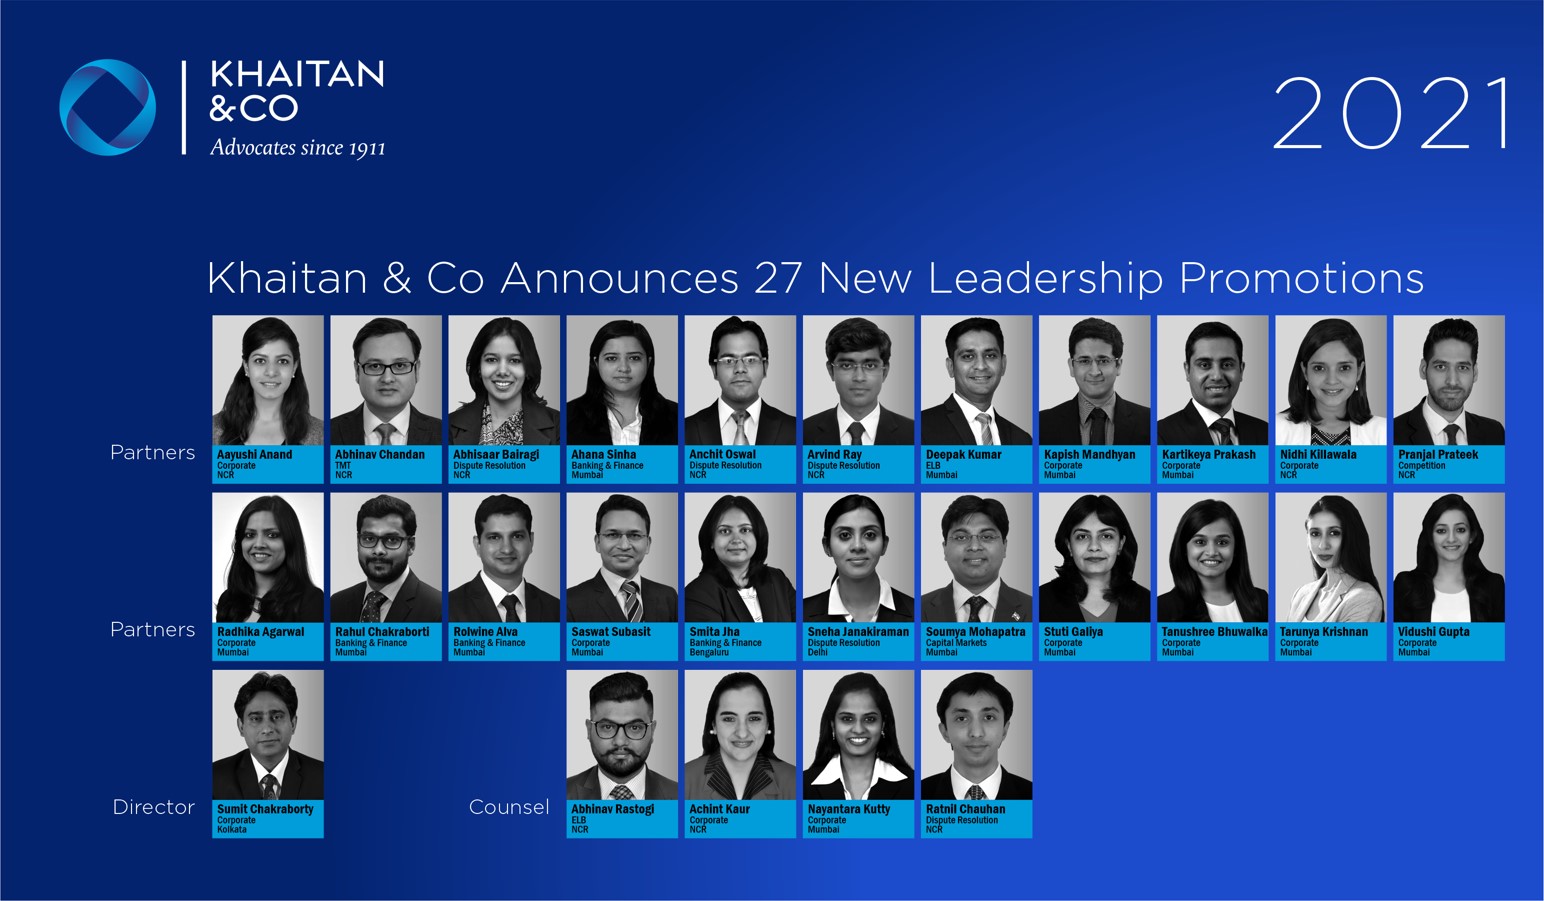 Khaitan & Co Announces 27 New Leadership Promotions